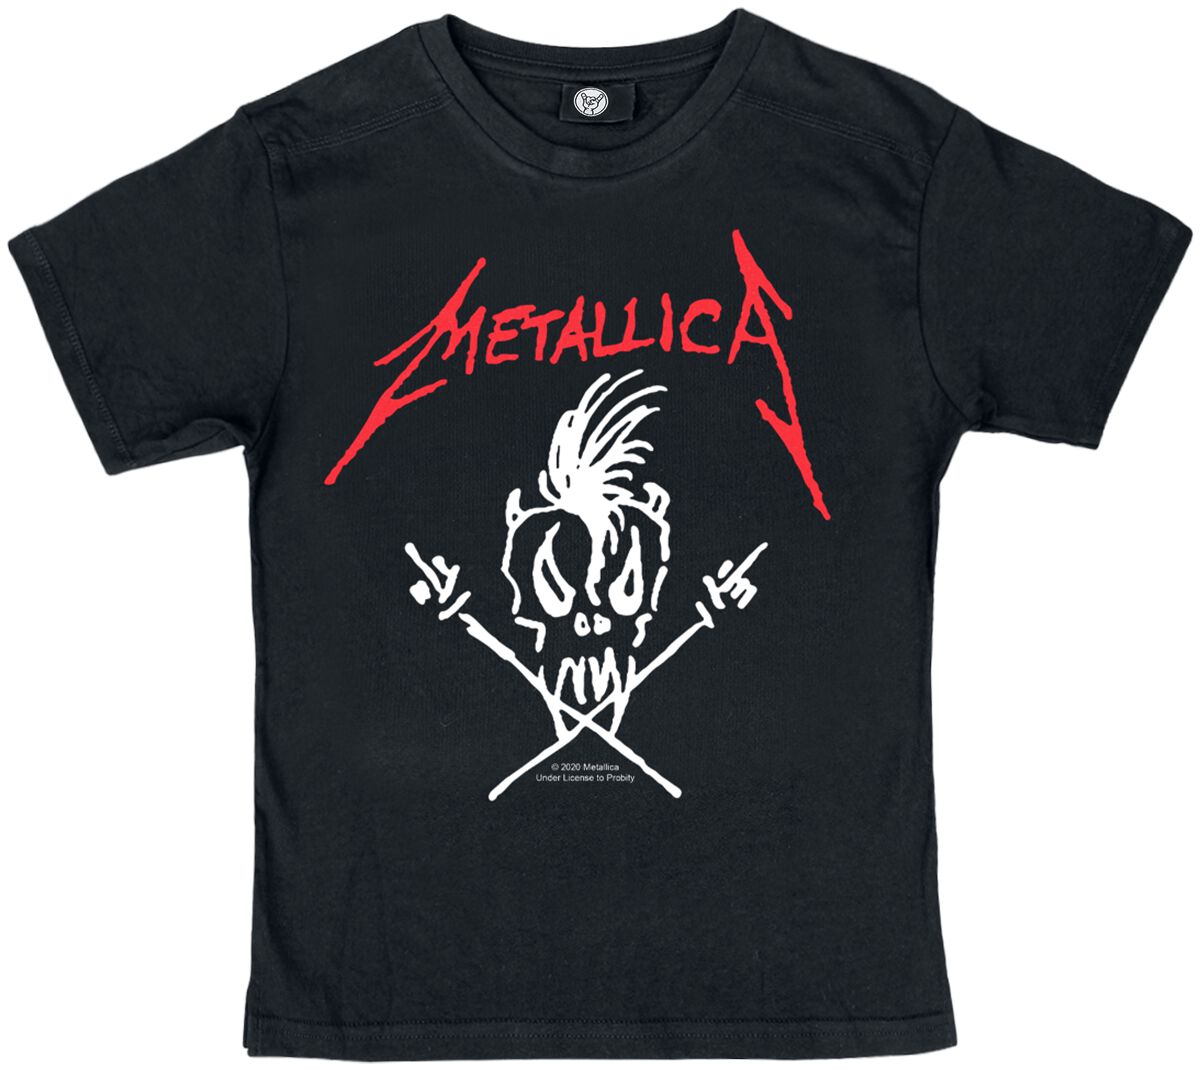 Metallica T-Shirt für Kinder - Metal-Kids - Scary Guy - für Mädchen & Jungen - schwarz  - Lizenziertes Merchandise!